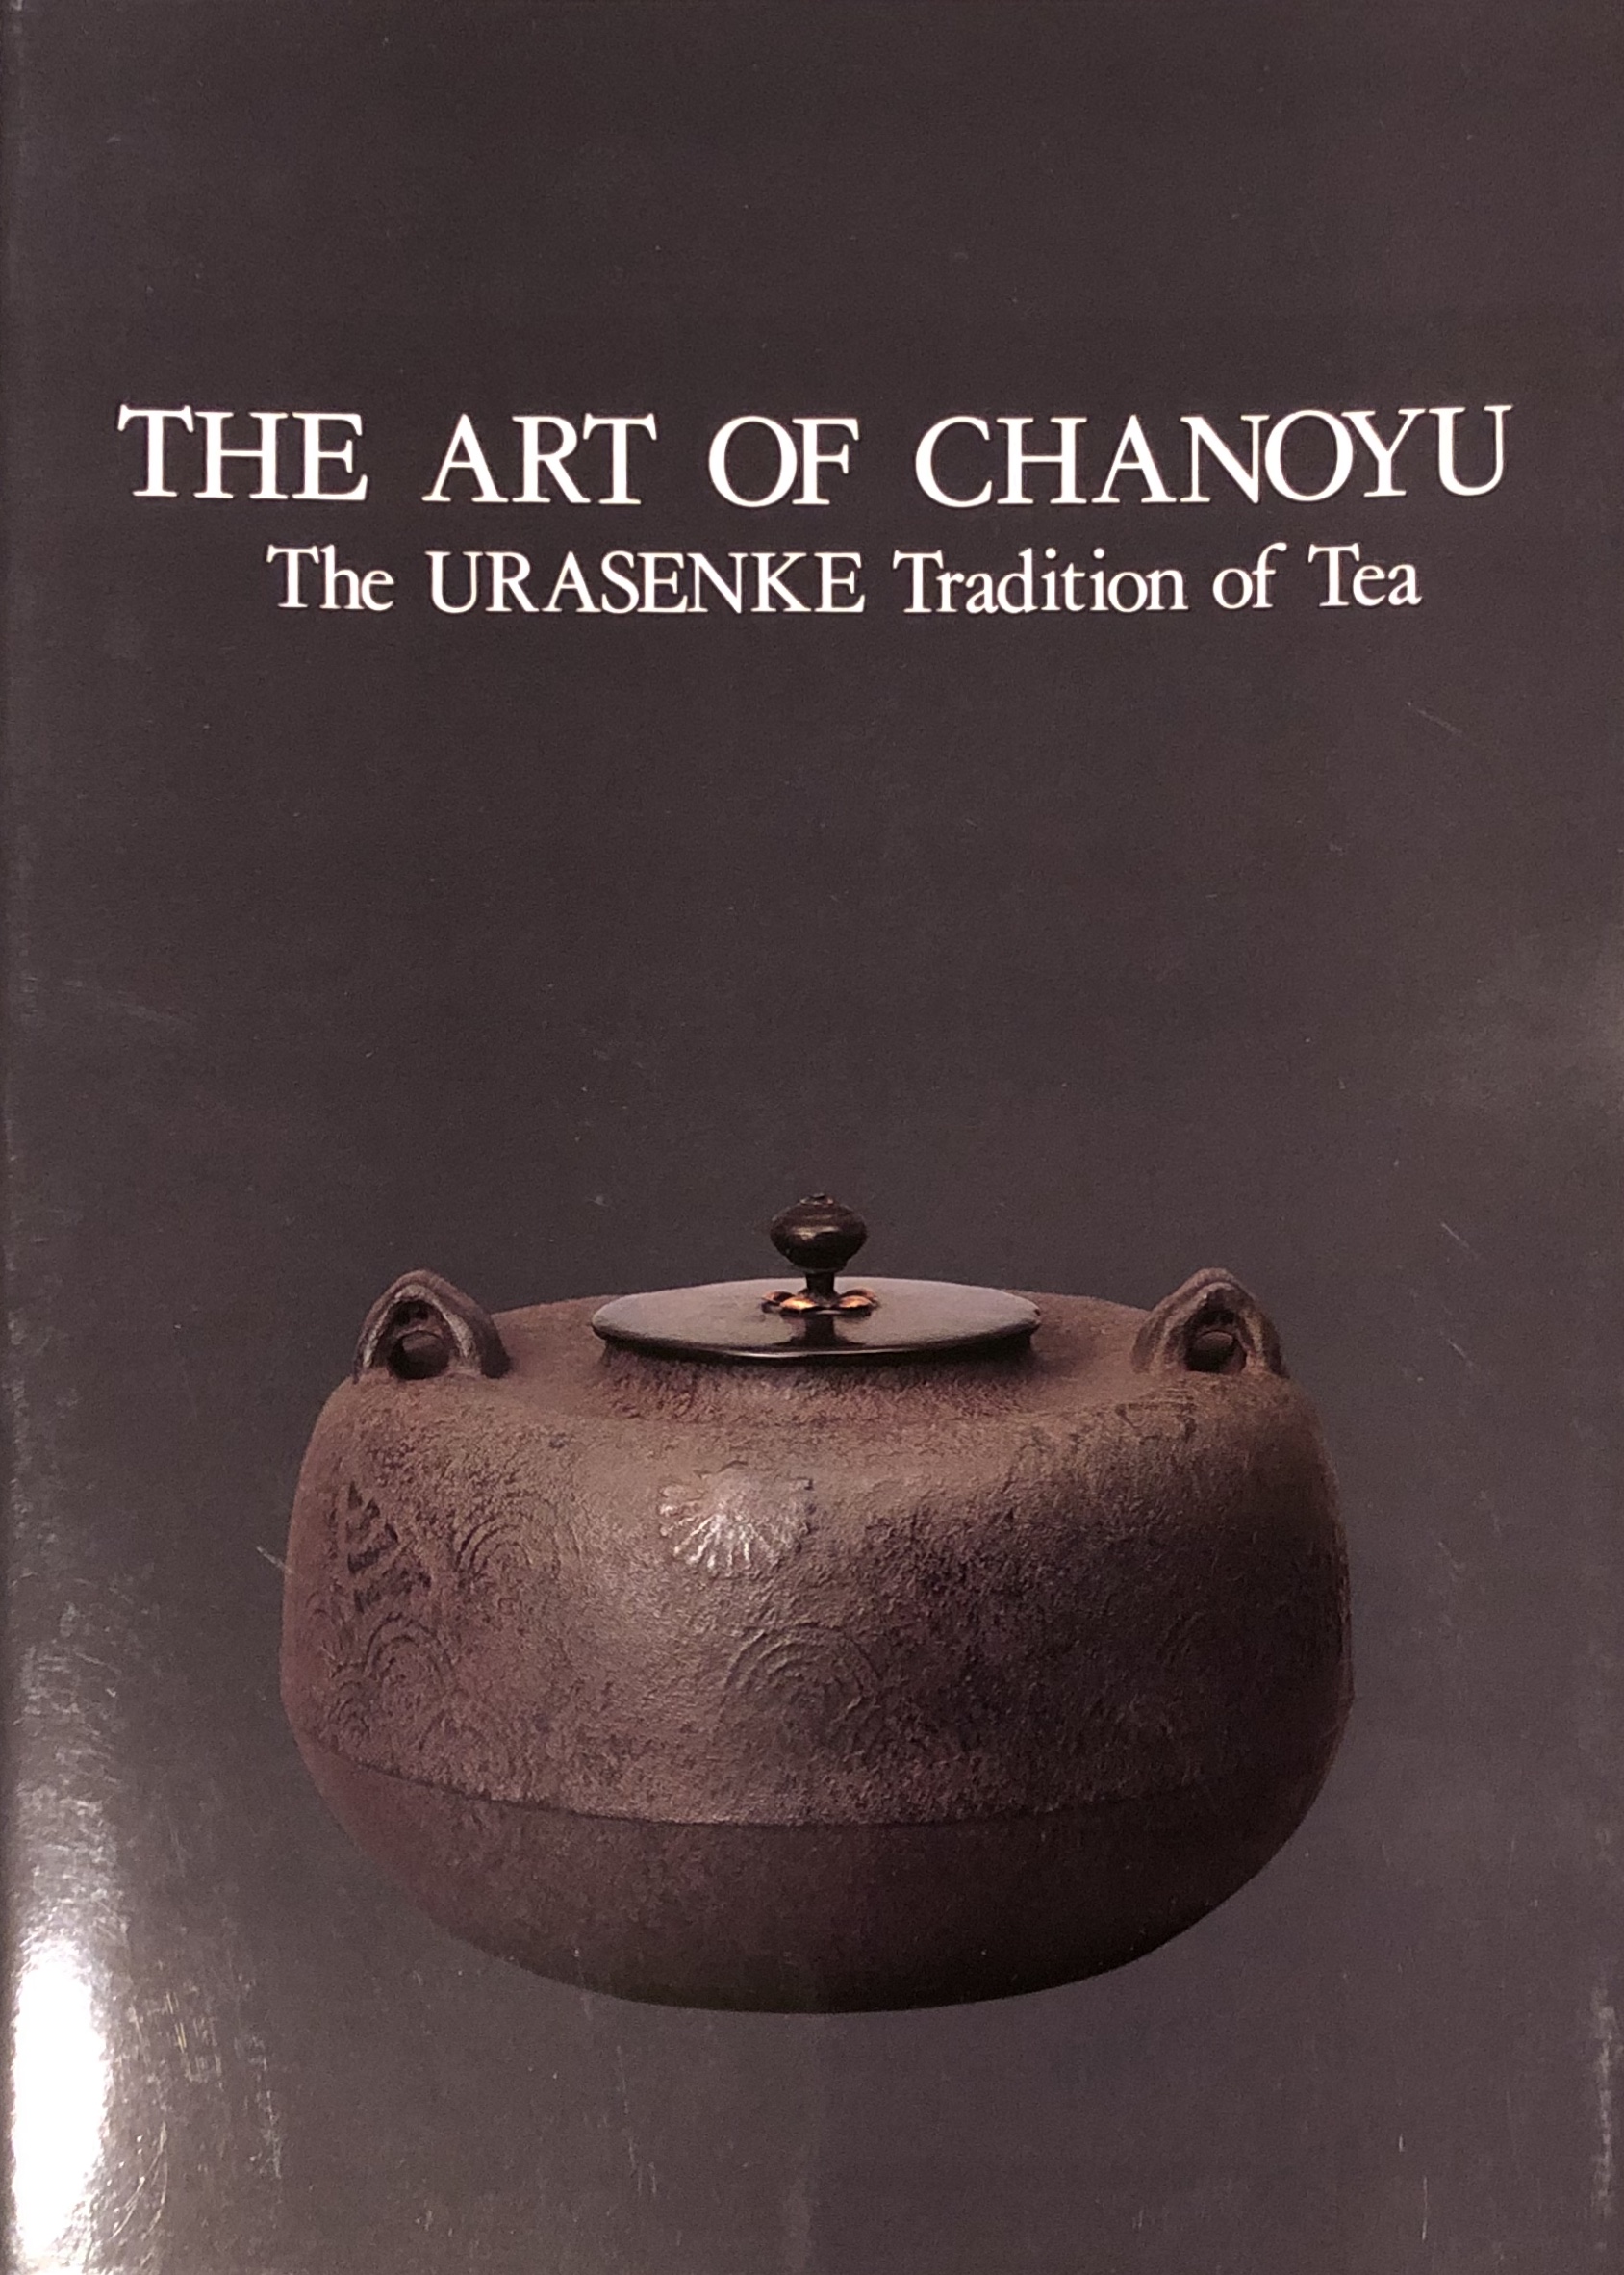 The Art of Chanoyu